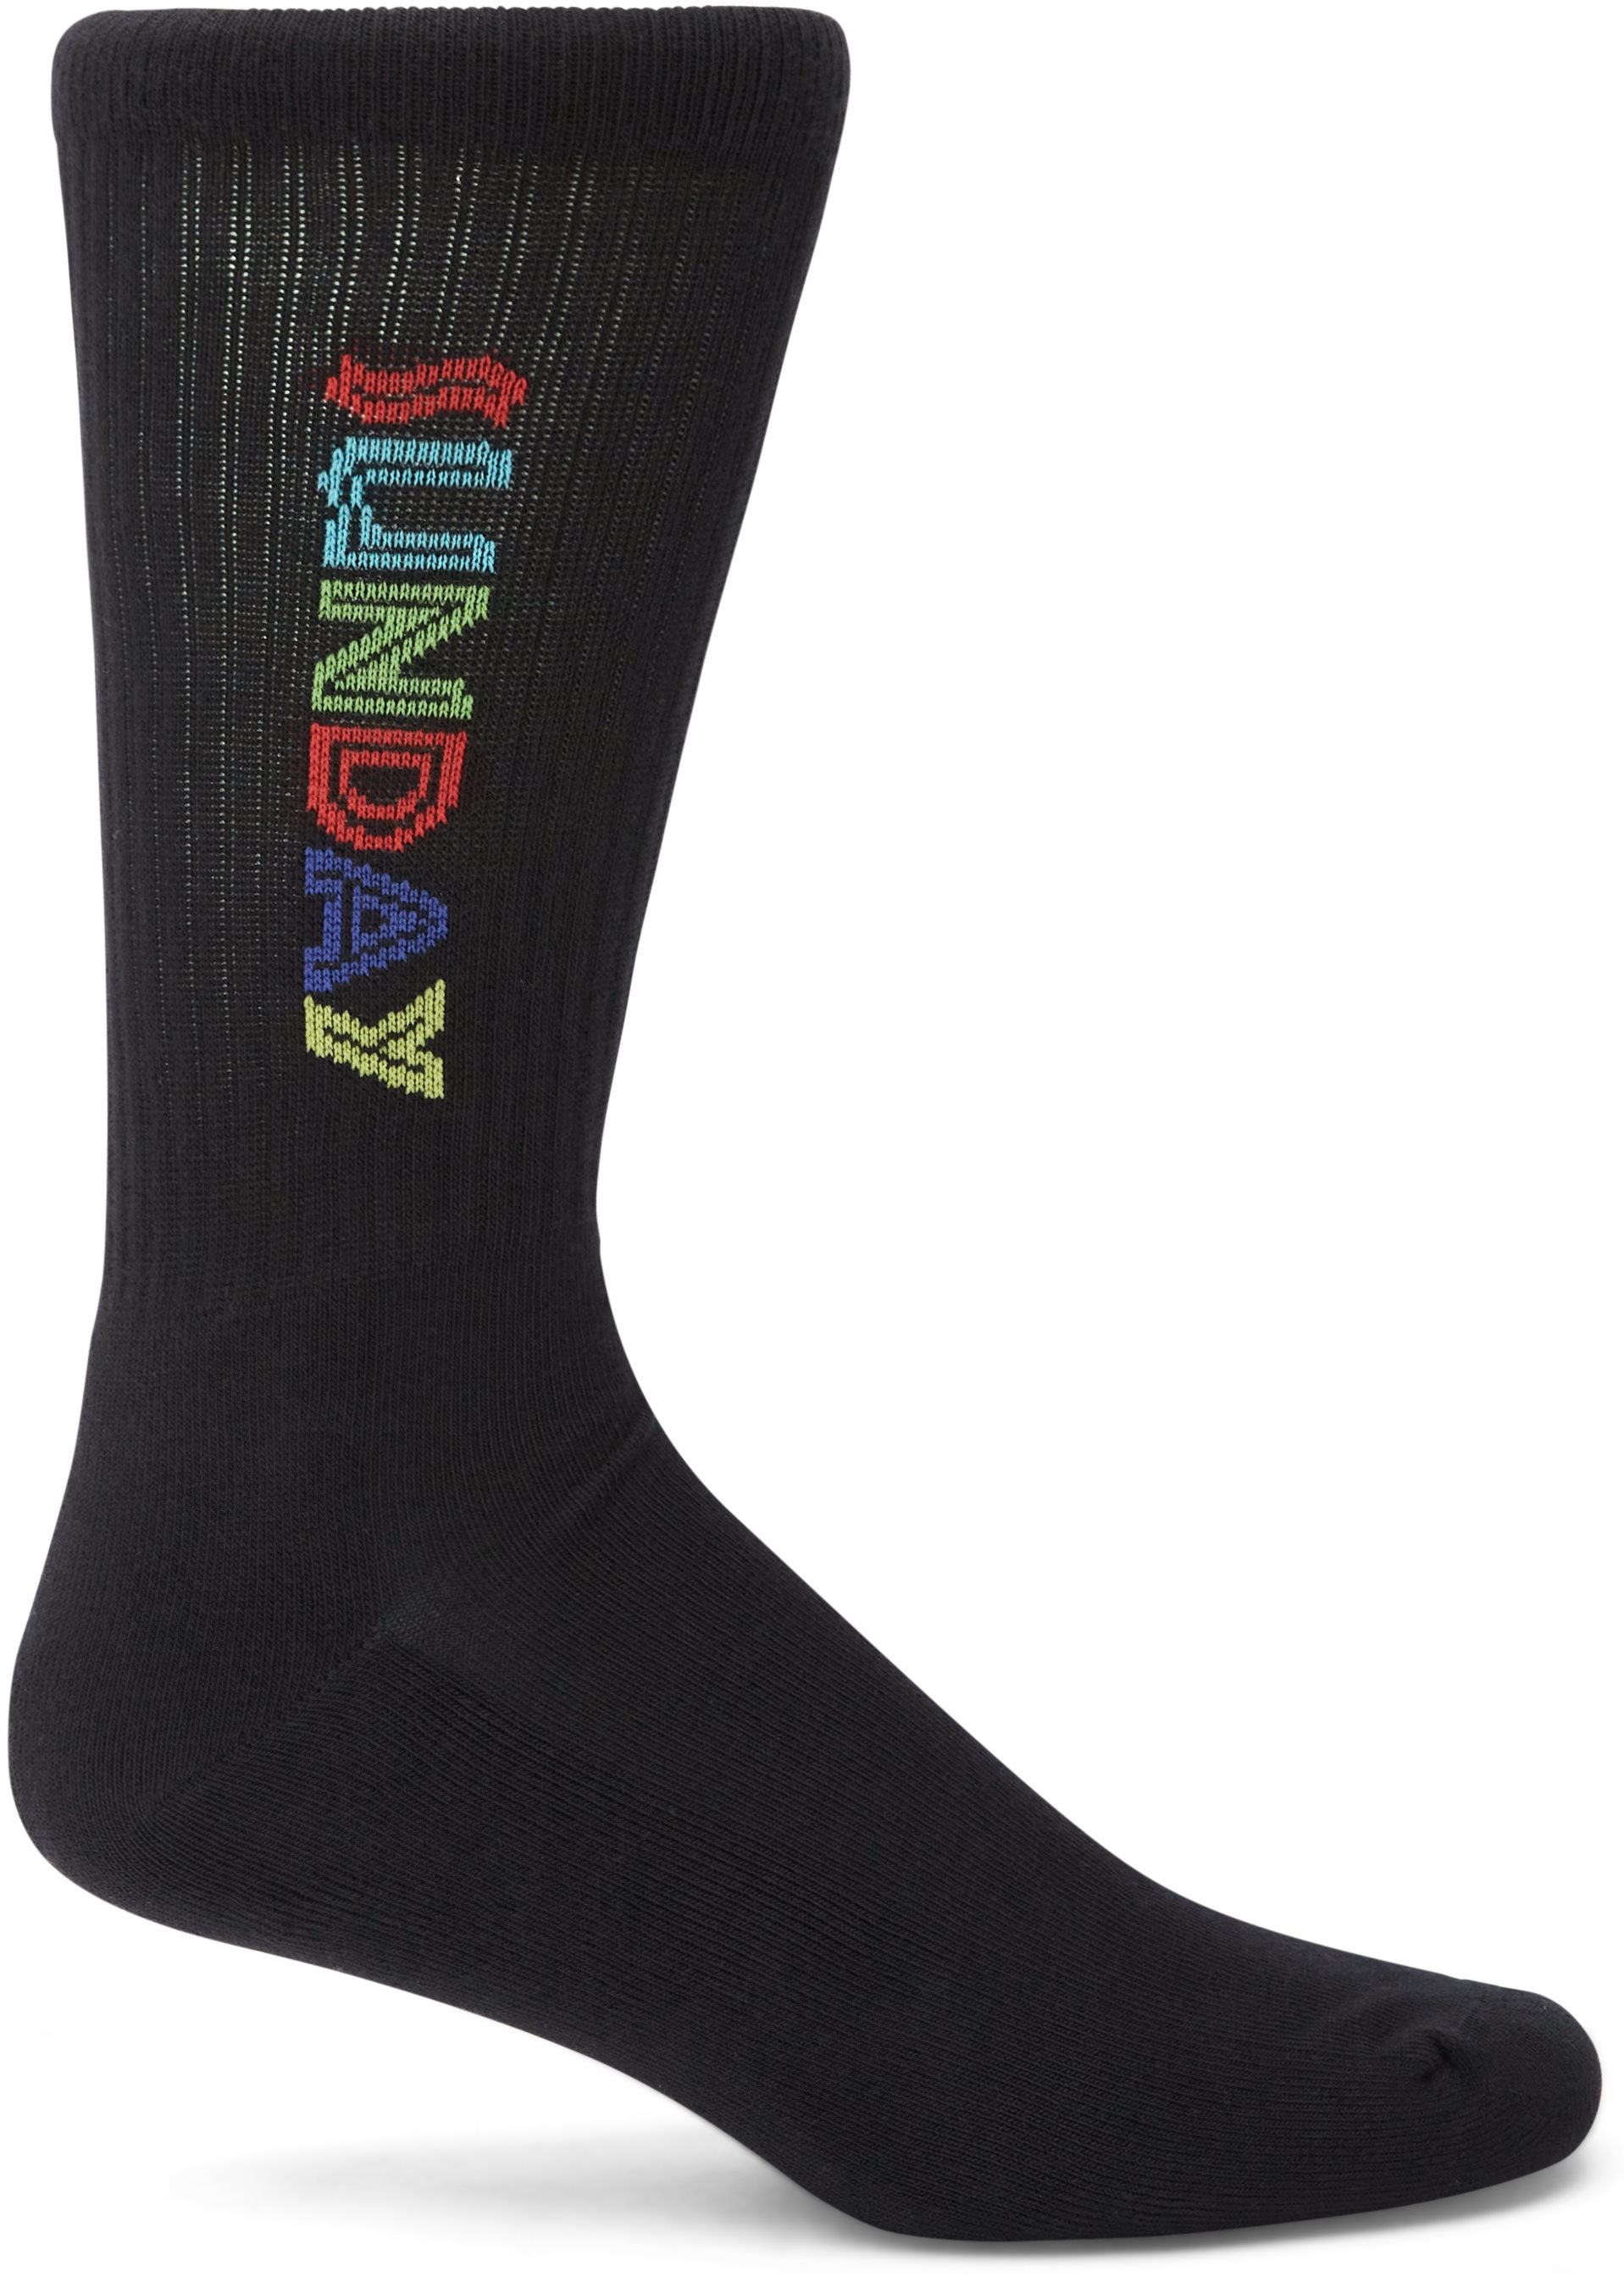 Kenya Strømper - Socks - Regular fit - Black